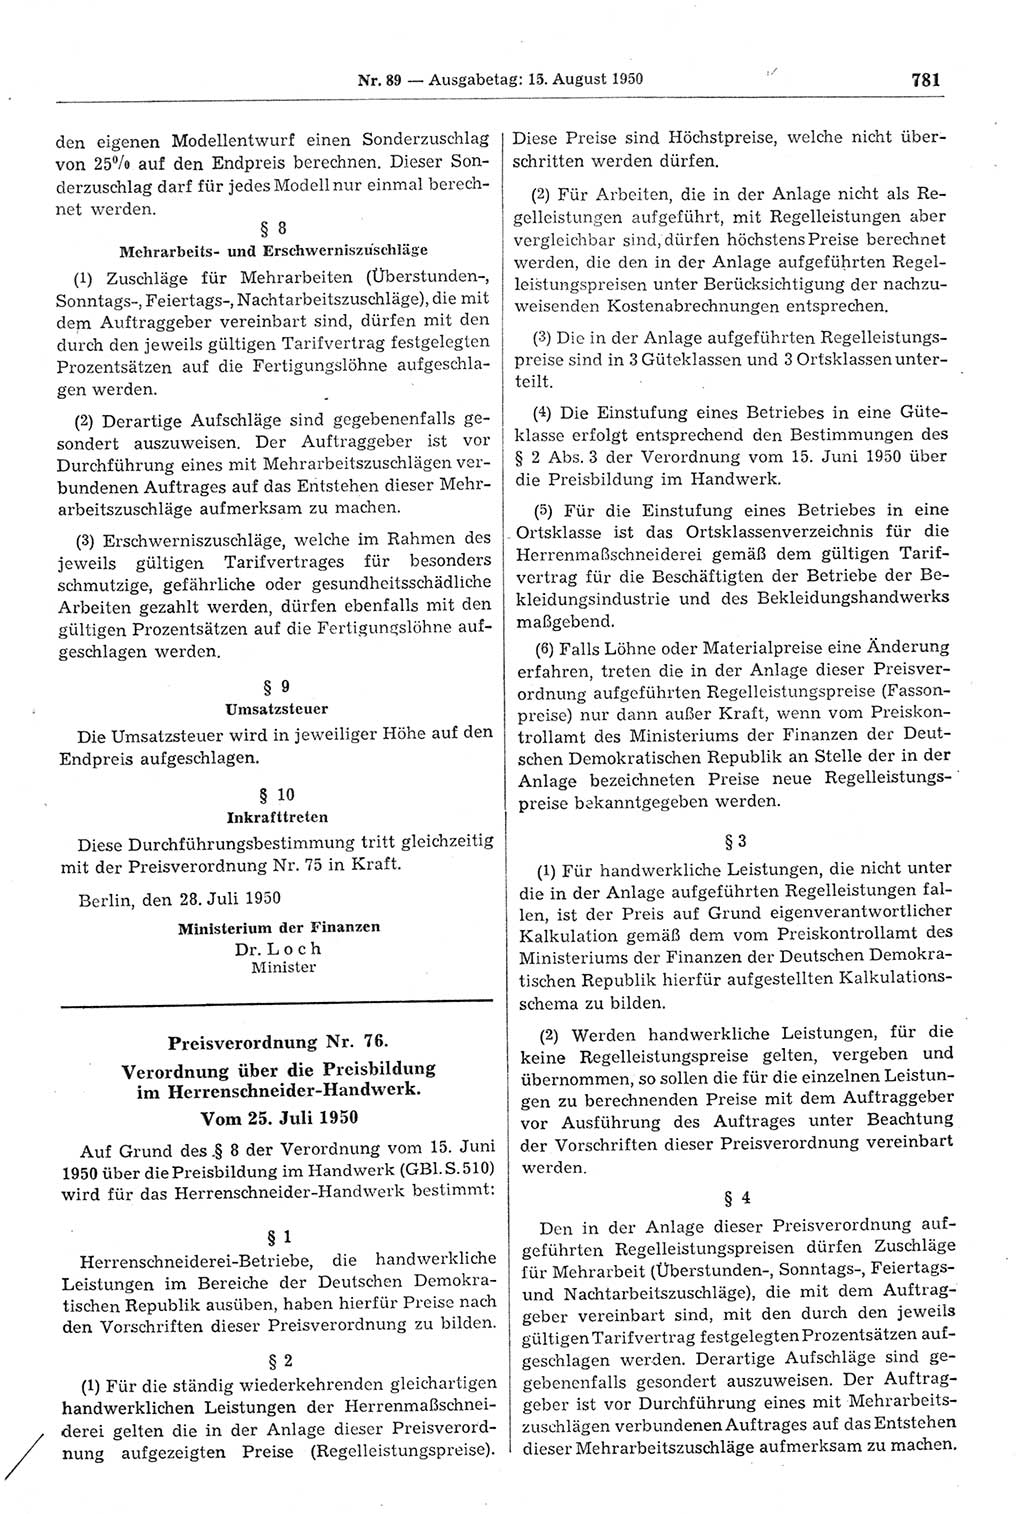 Gesetzblatt (GBl.) der Deutschen Demokratischen Republik (DDR) 1950, Seite 781 (GBl. DDR 1950, S. 781)